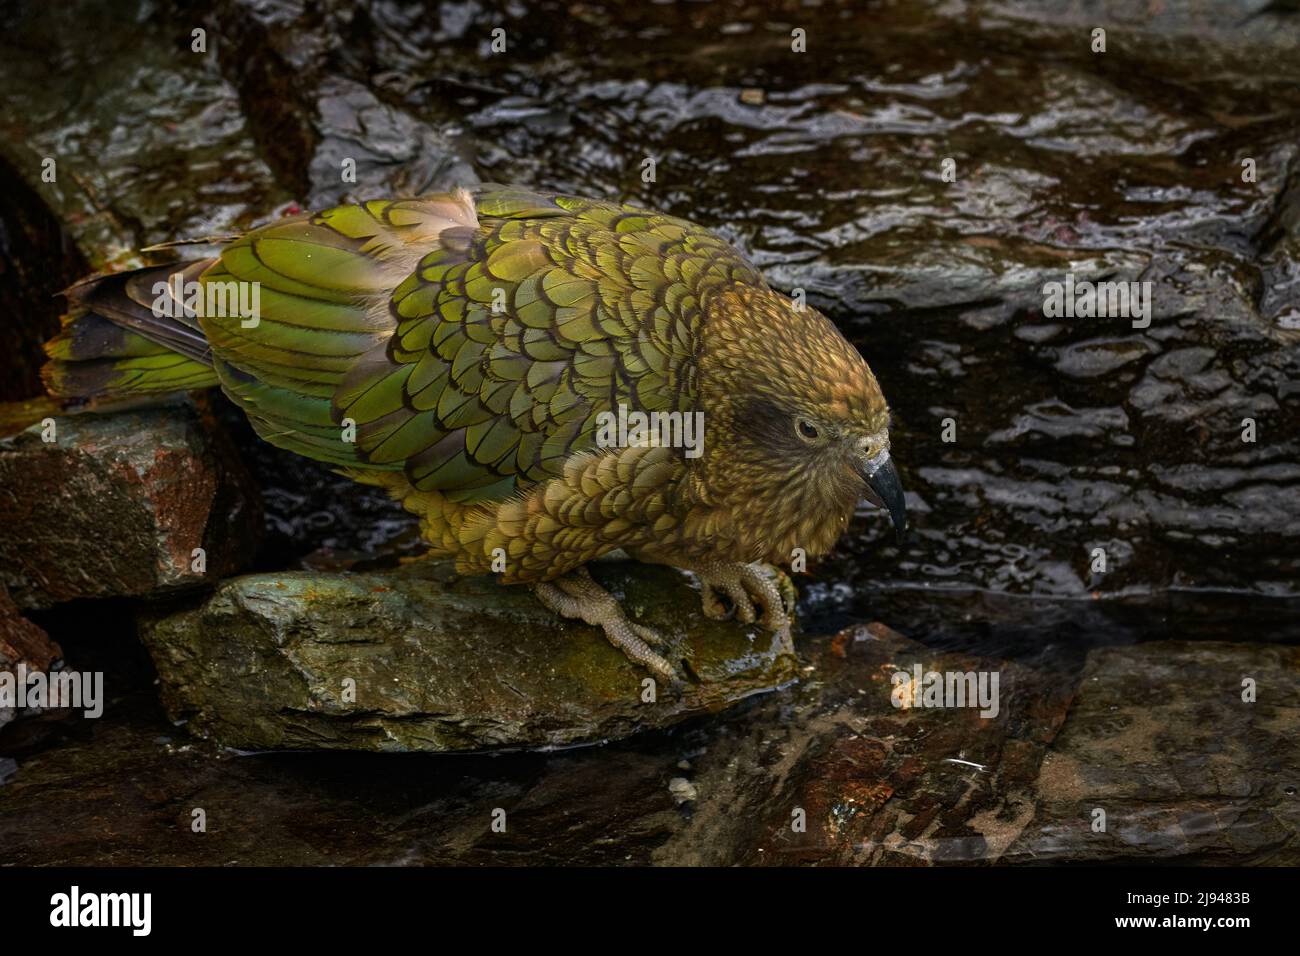 Kea Papagei trinken Flusswasser, Nestor notabilis, grüner Vogel im Naturlebensraum, Berg in Neuseeland. Kea sititng auf dem Baumstamm, Wildtiere Stockfoto